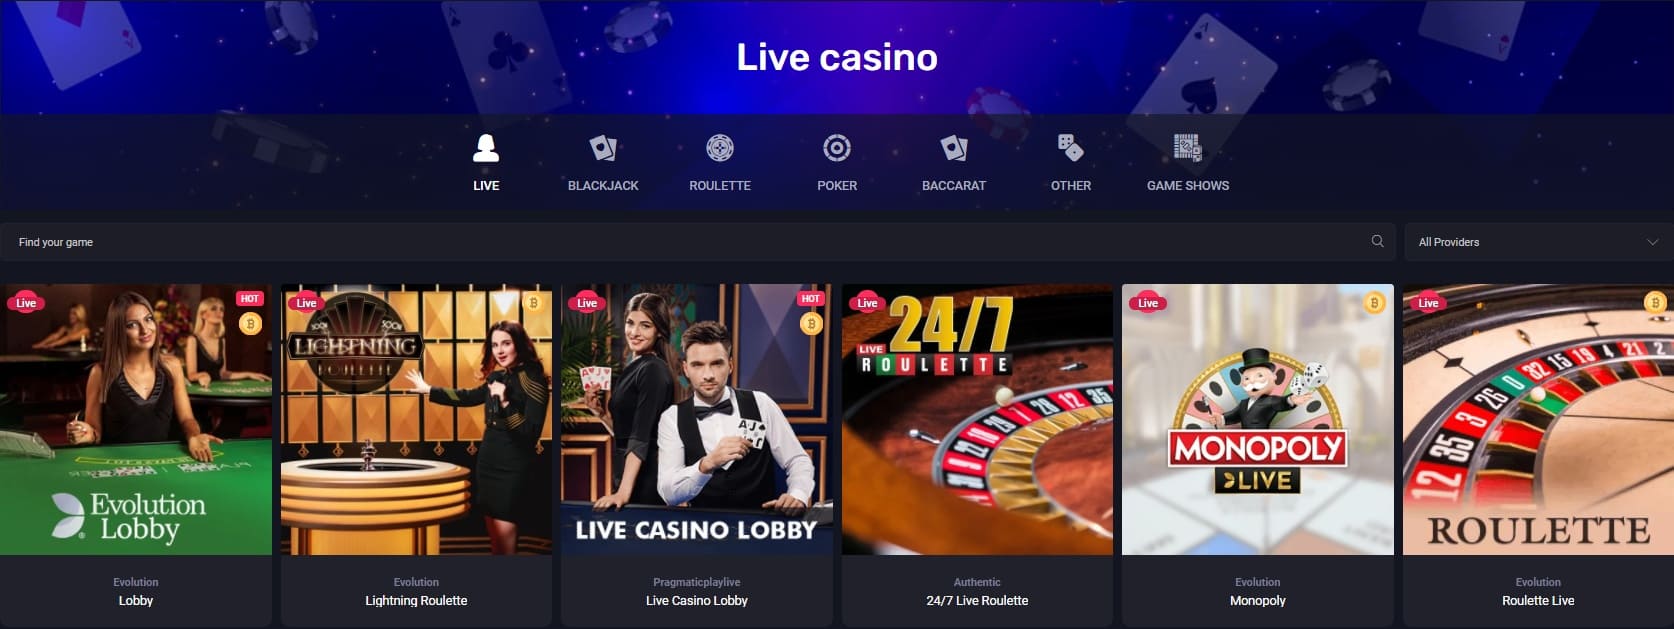 woocasino live casino